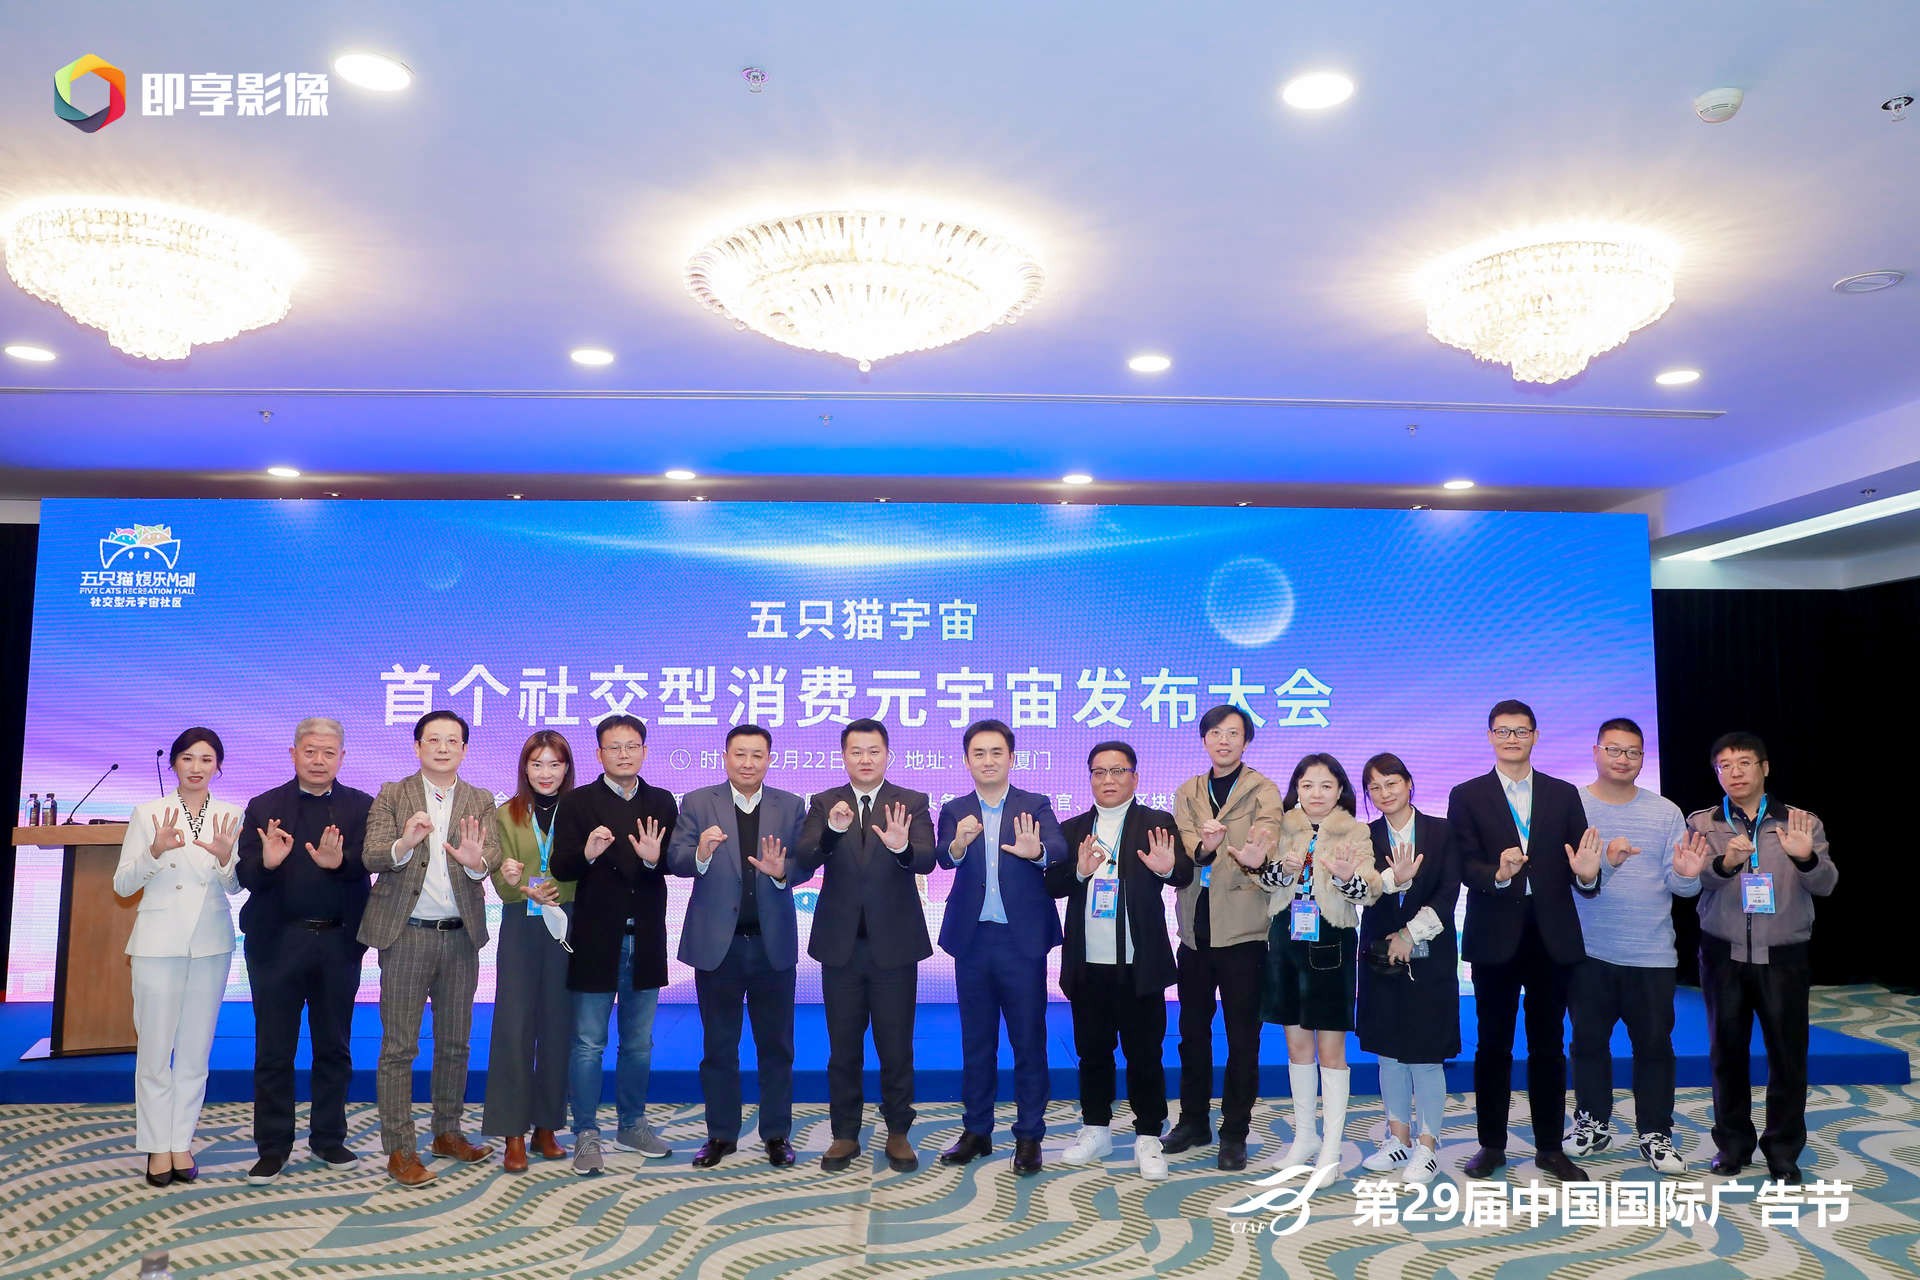 “五只猫宇宙”-首个社交型消费元宇宙首发亮相第29届中国国际广告节